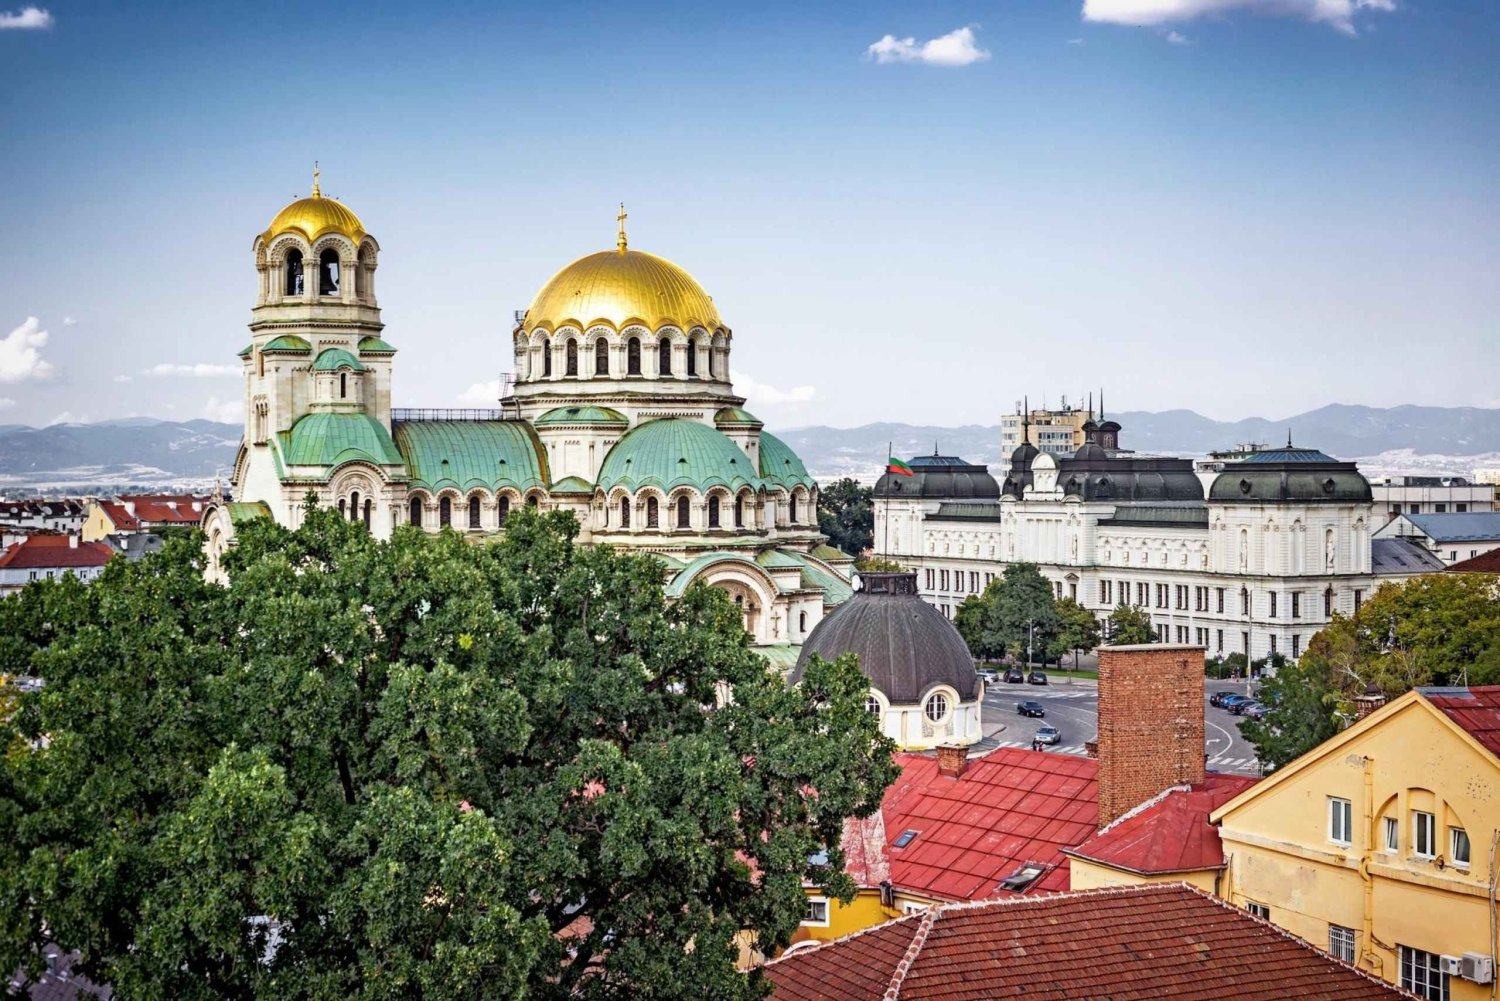 Sofia: Express wandeling met een local in 60 minuten